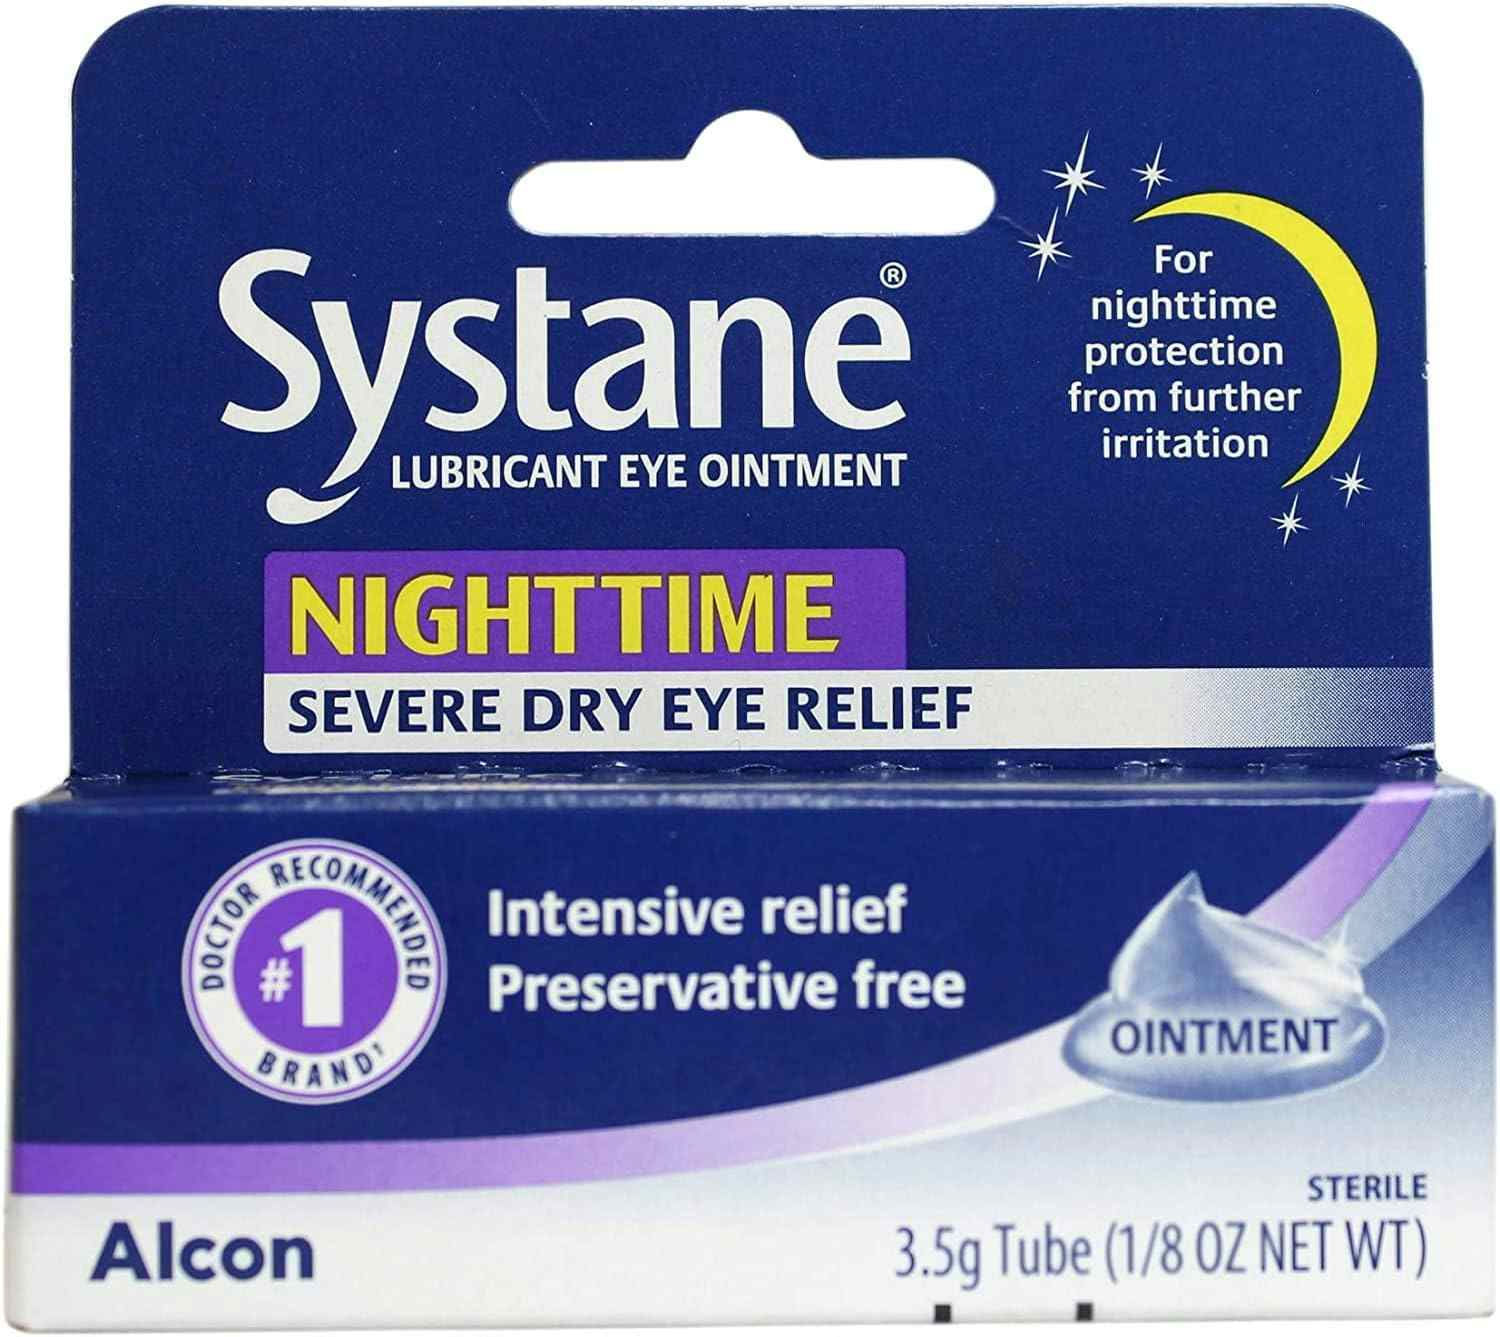 Systane Nighttime Lubricant Eye Ointment, 3.5 Gram